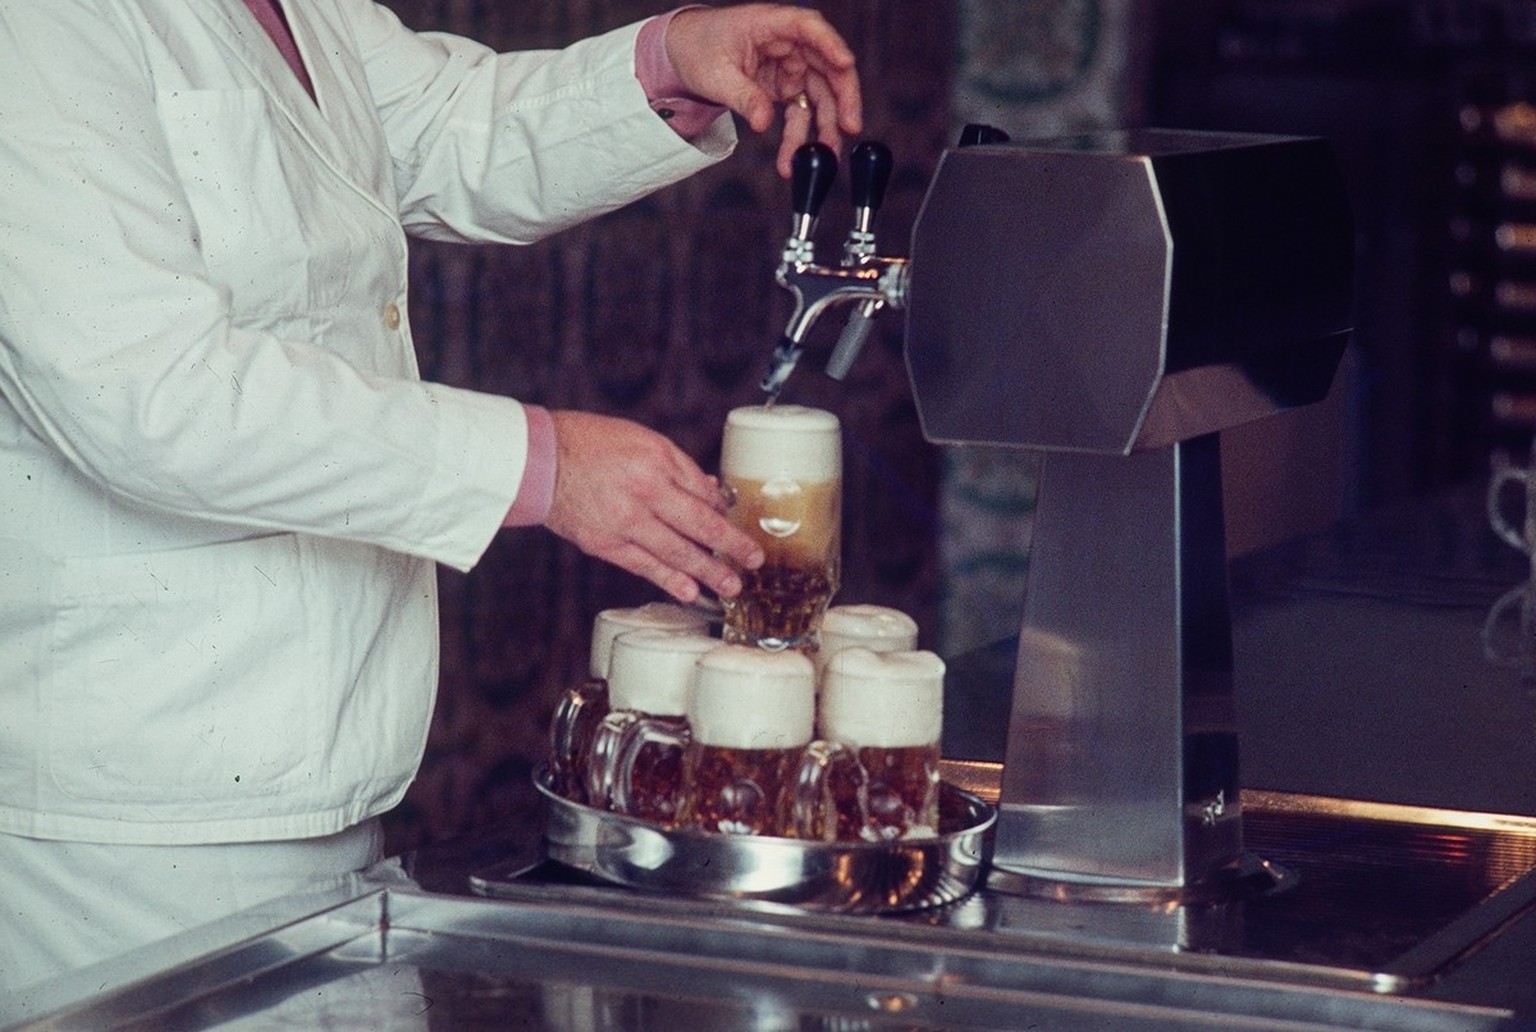 Ein Wirt schenkt Bier aus, um 1980.
http://doi.org/10.3932/ethz-a-001258388